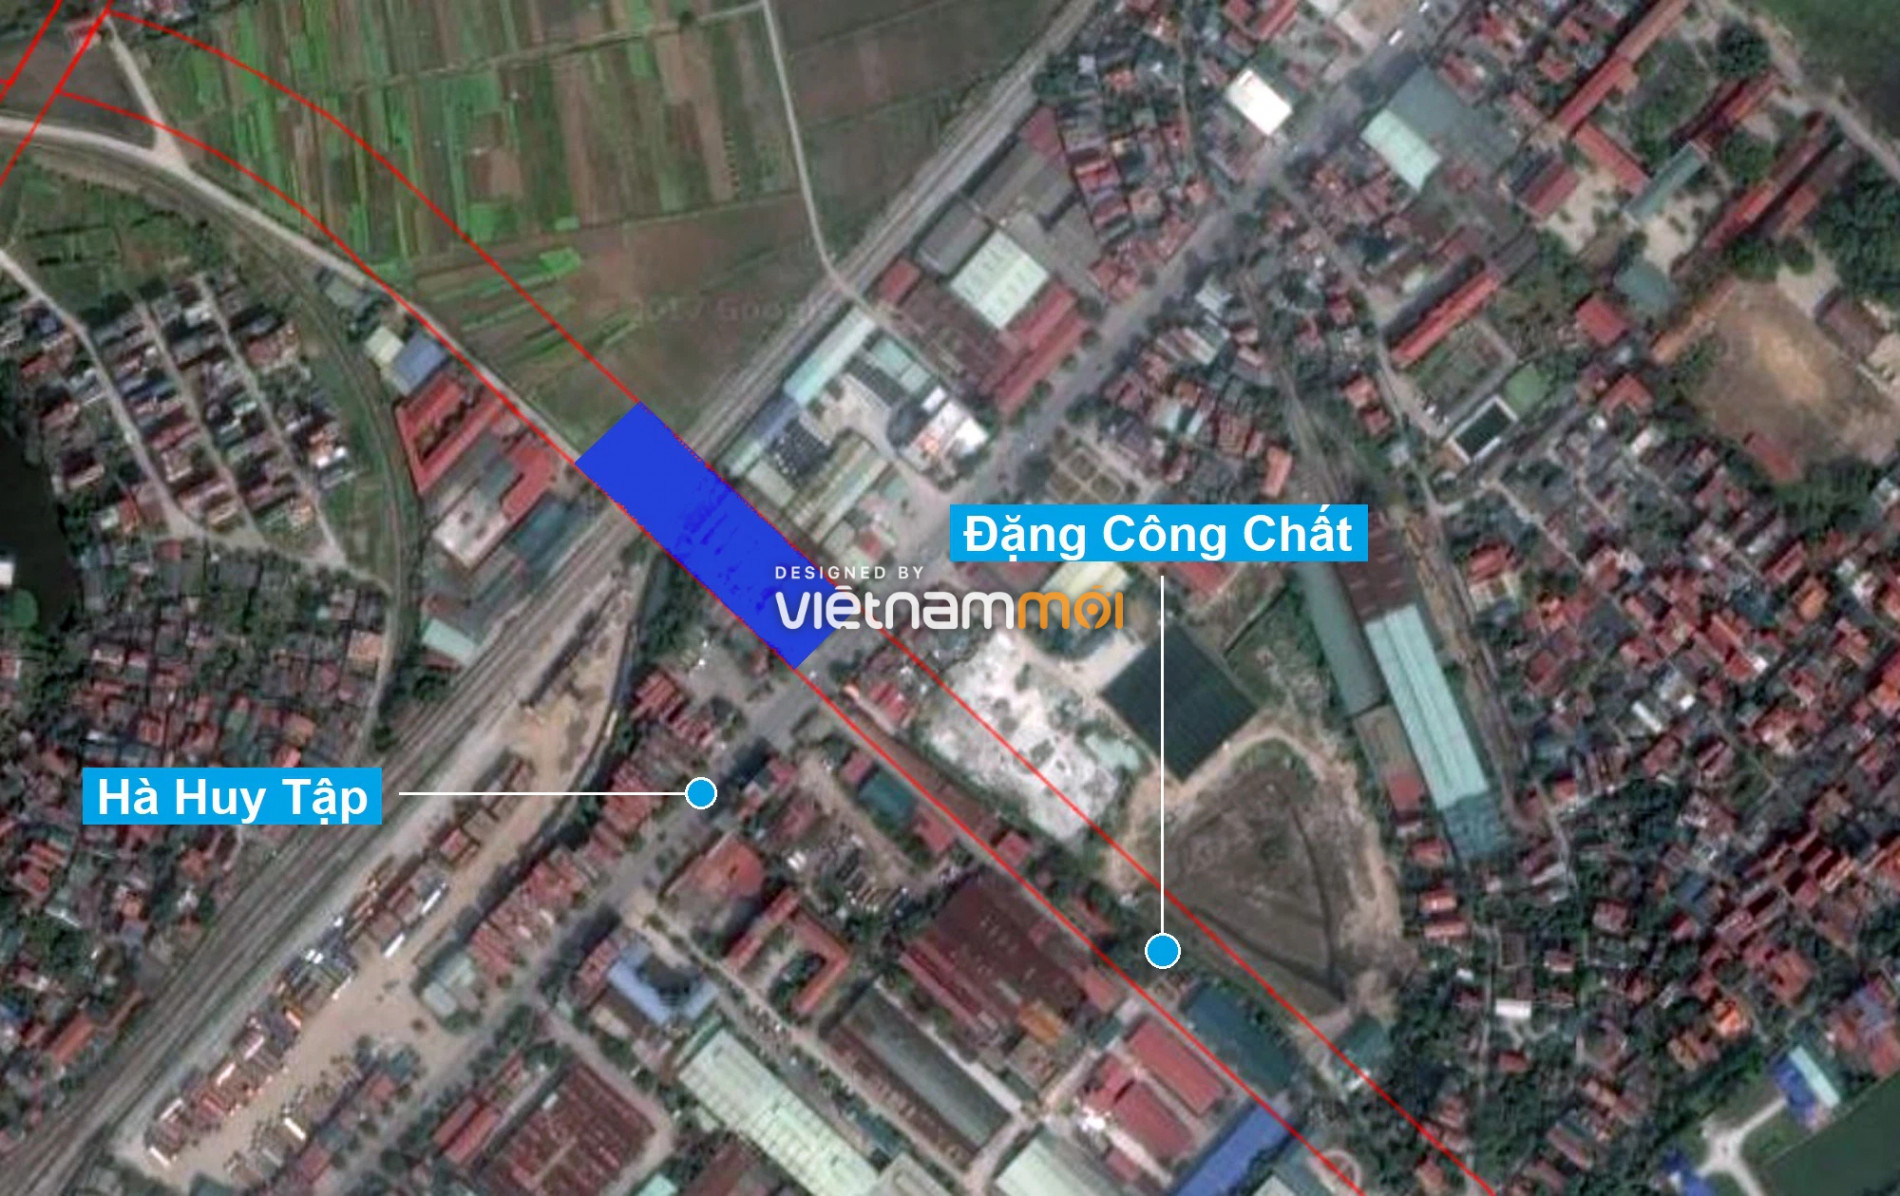 Những khu đất sắp thu hồi để mở đường ở huyện Gia Lâm, Hà Nội (phần 2) - Ảnh 9.